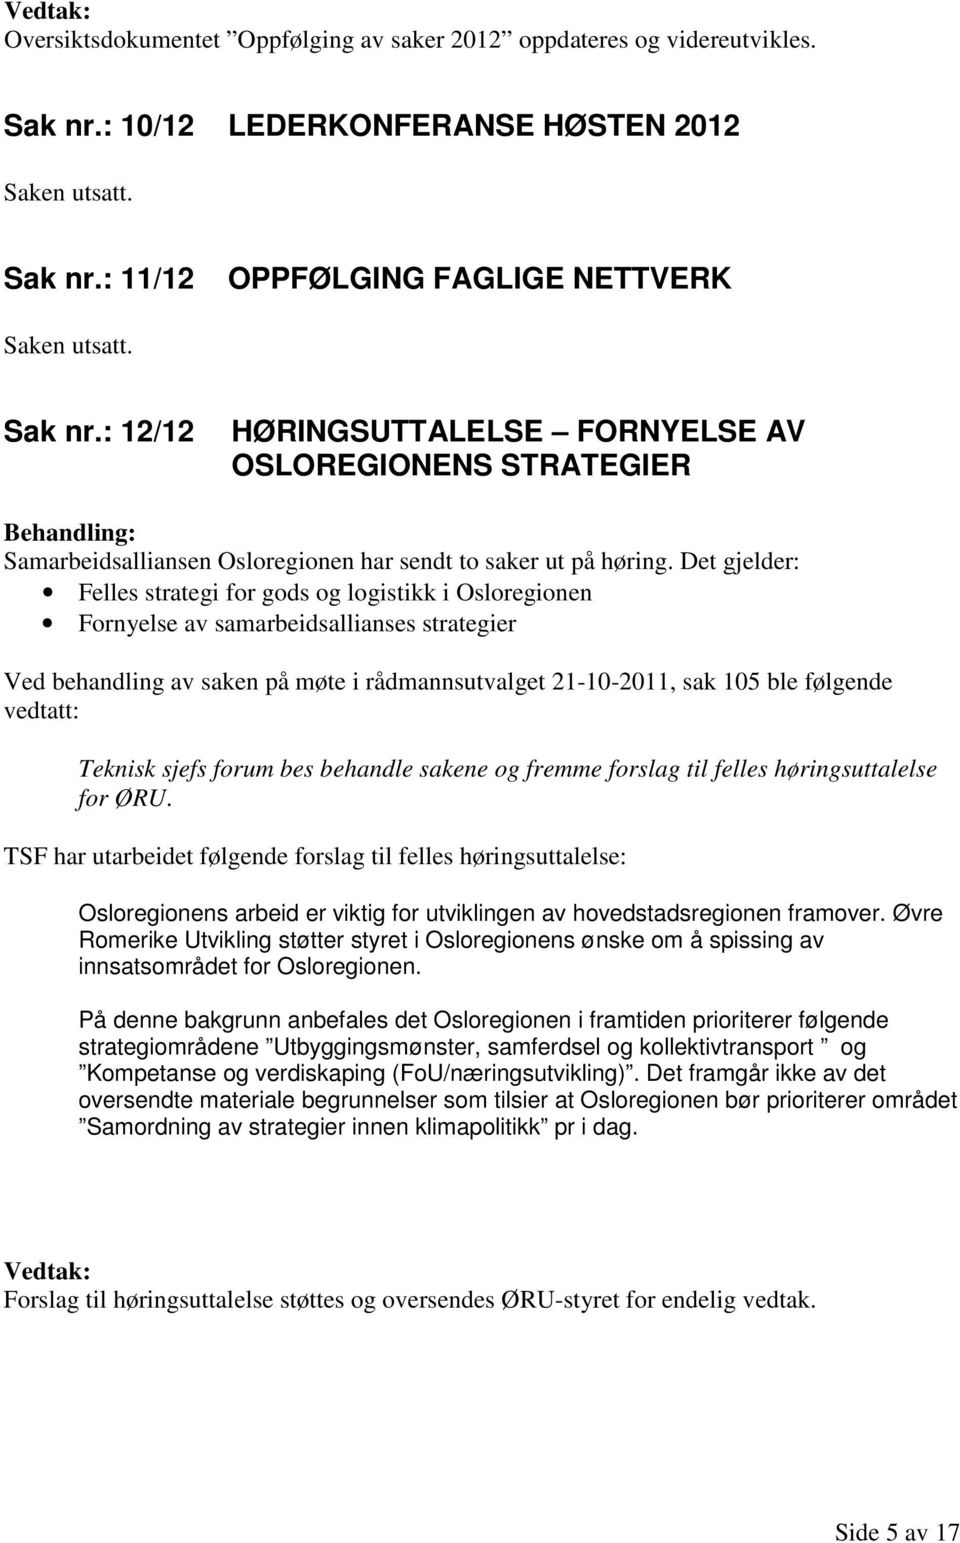 Det gjelder: Felles strategi for gods og logistikk i Osloregionen Fornyelse av samarbeidsallianses strategier Ved behandling av saken på møte i rådmannsutvalget 21-10-2011, sak 105 ble følgende